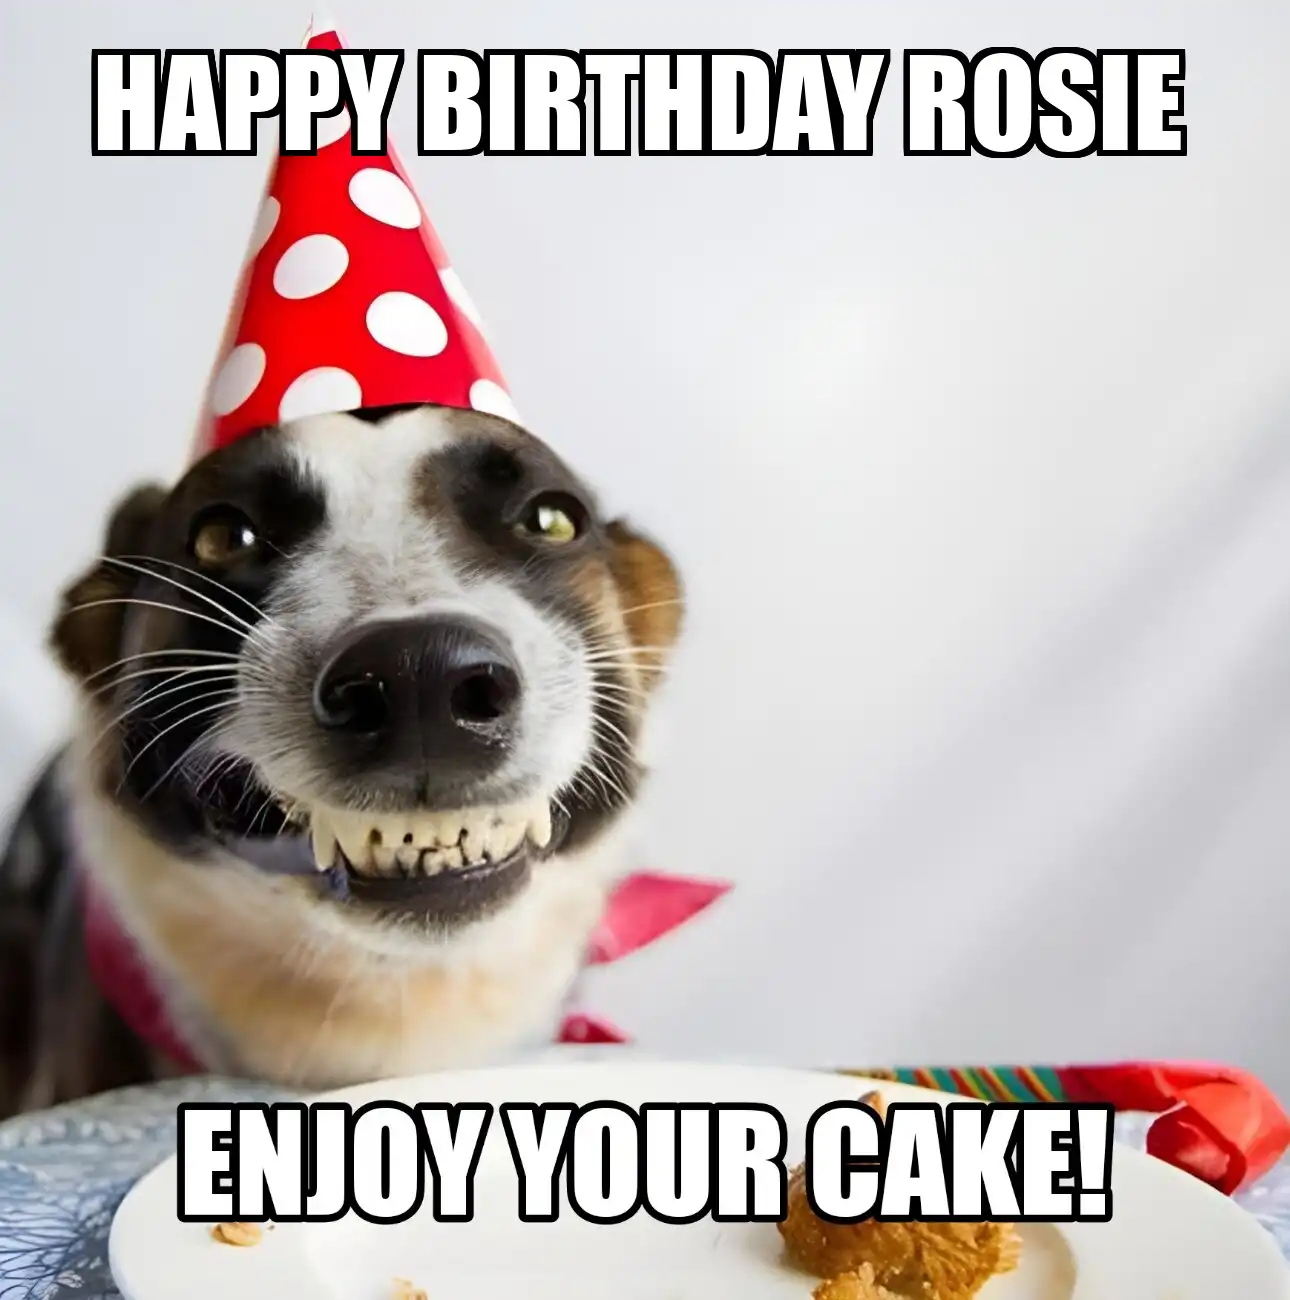 Happy Birthday Rosie Enjoy Your Cake Dog Meme